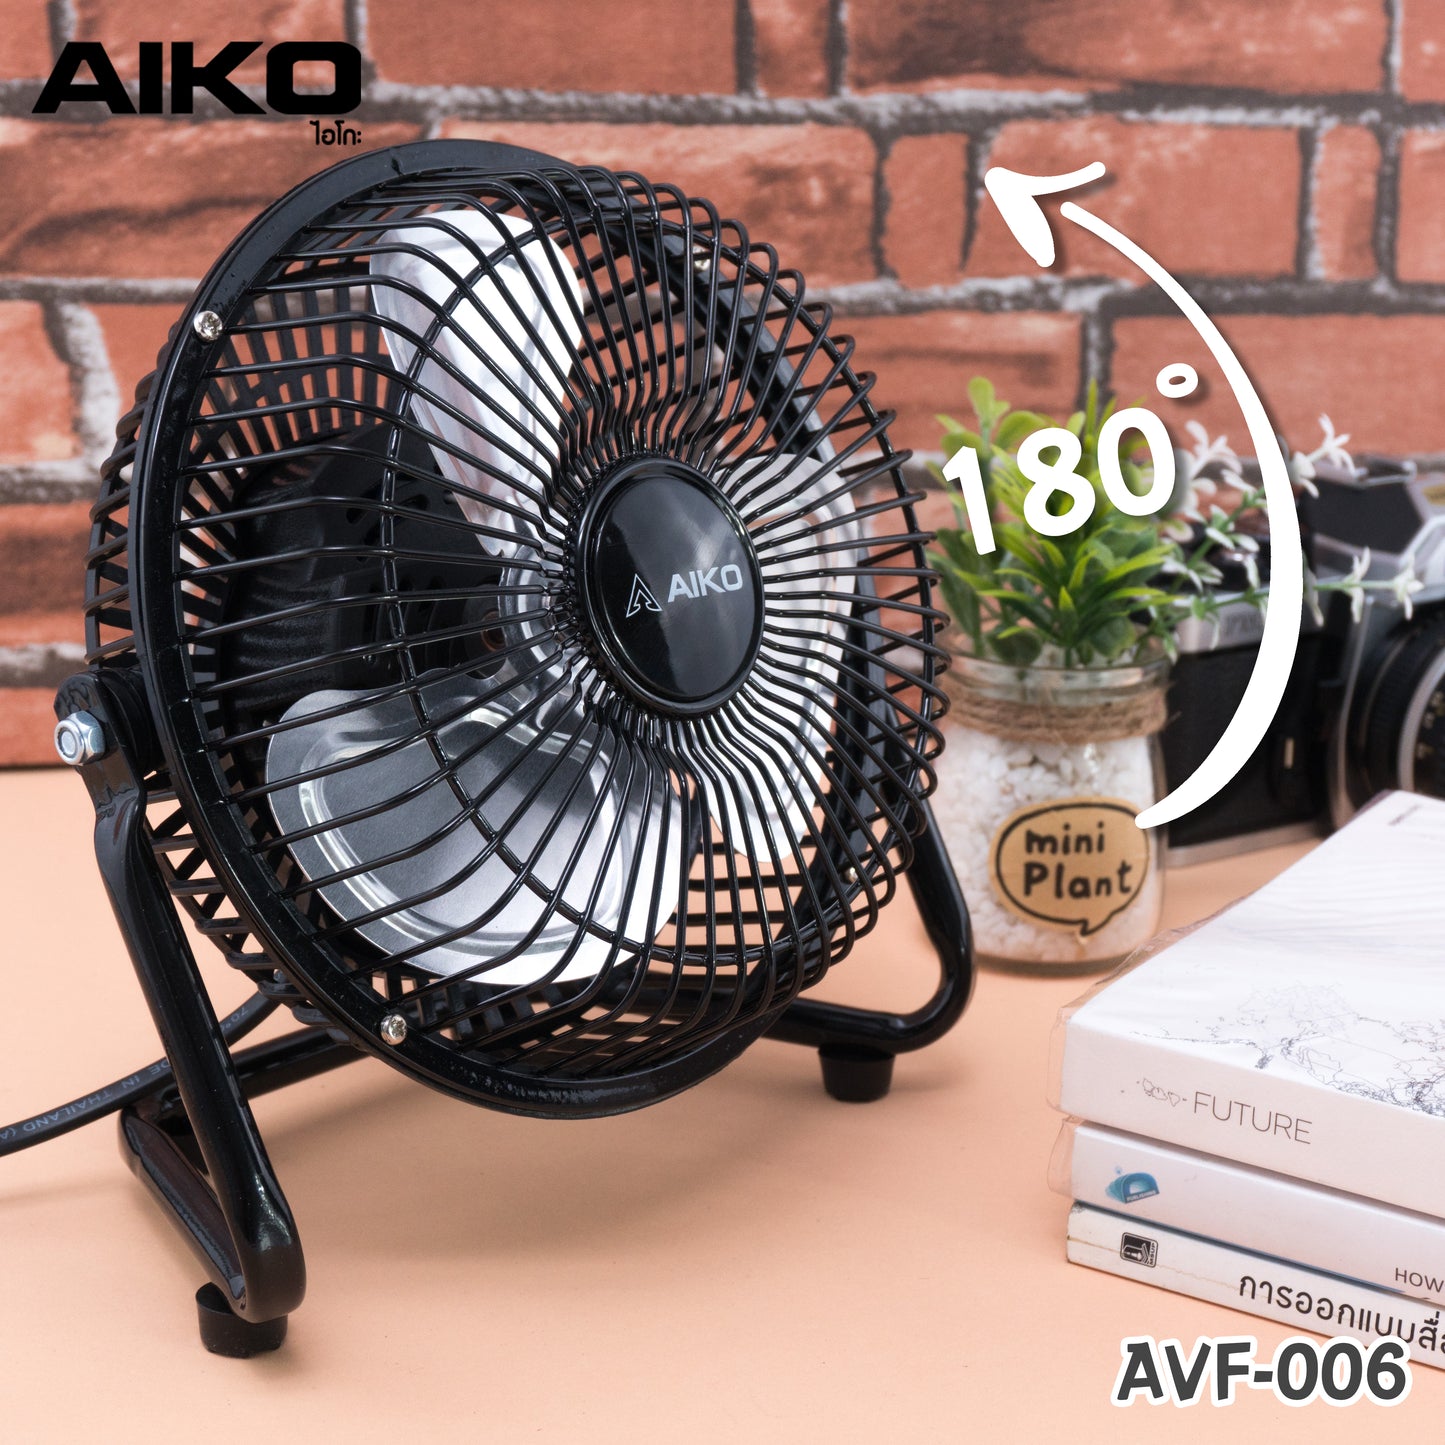 พัดลม ใบพัดอลูมิเนียม 6 นิ้ว Aluminium-Blade Electric Fan | AVF006